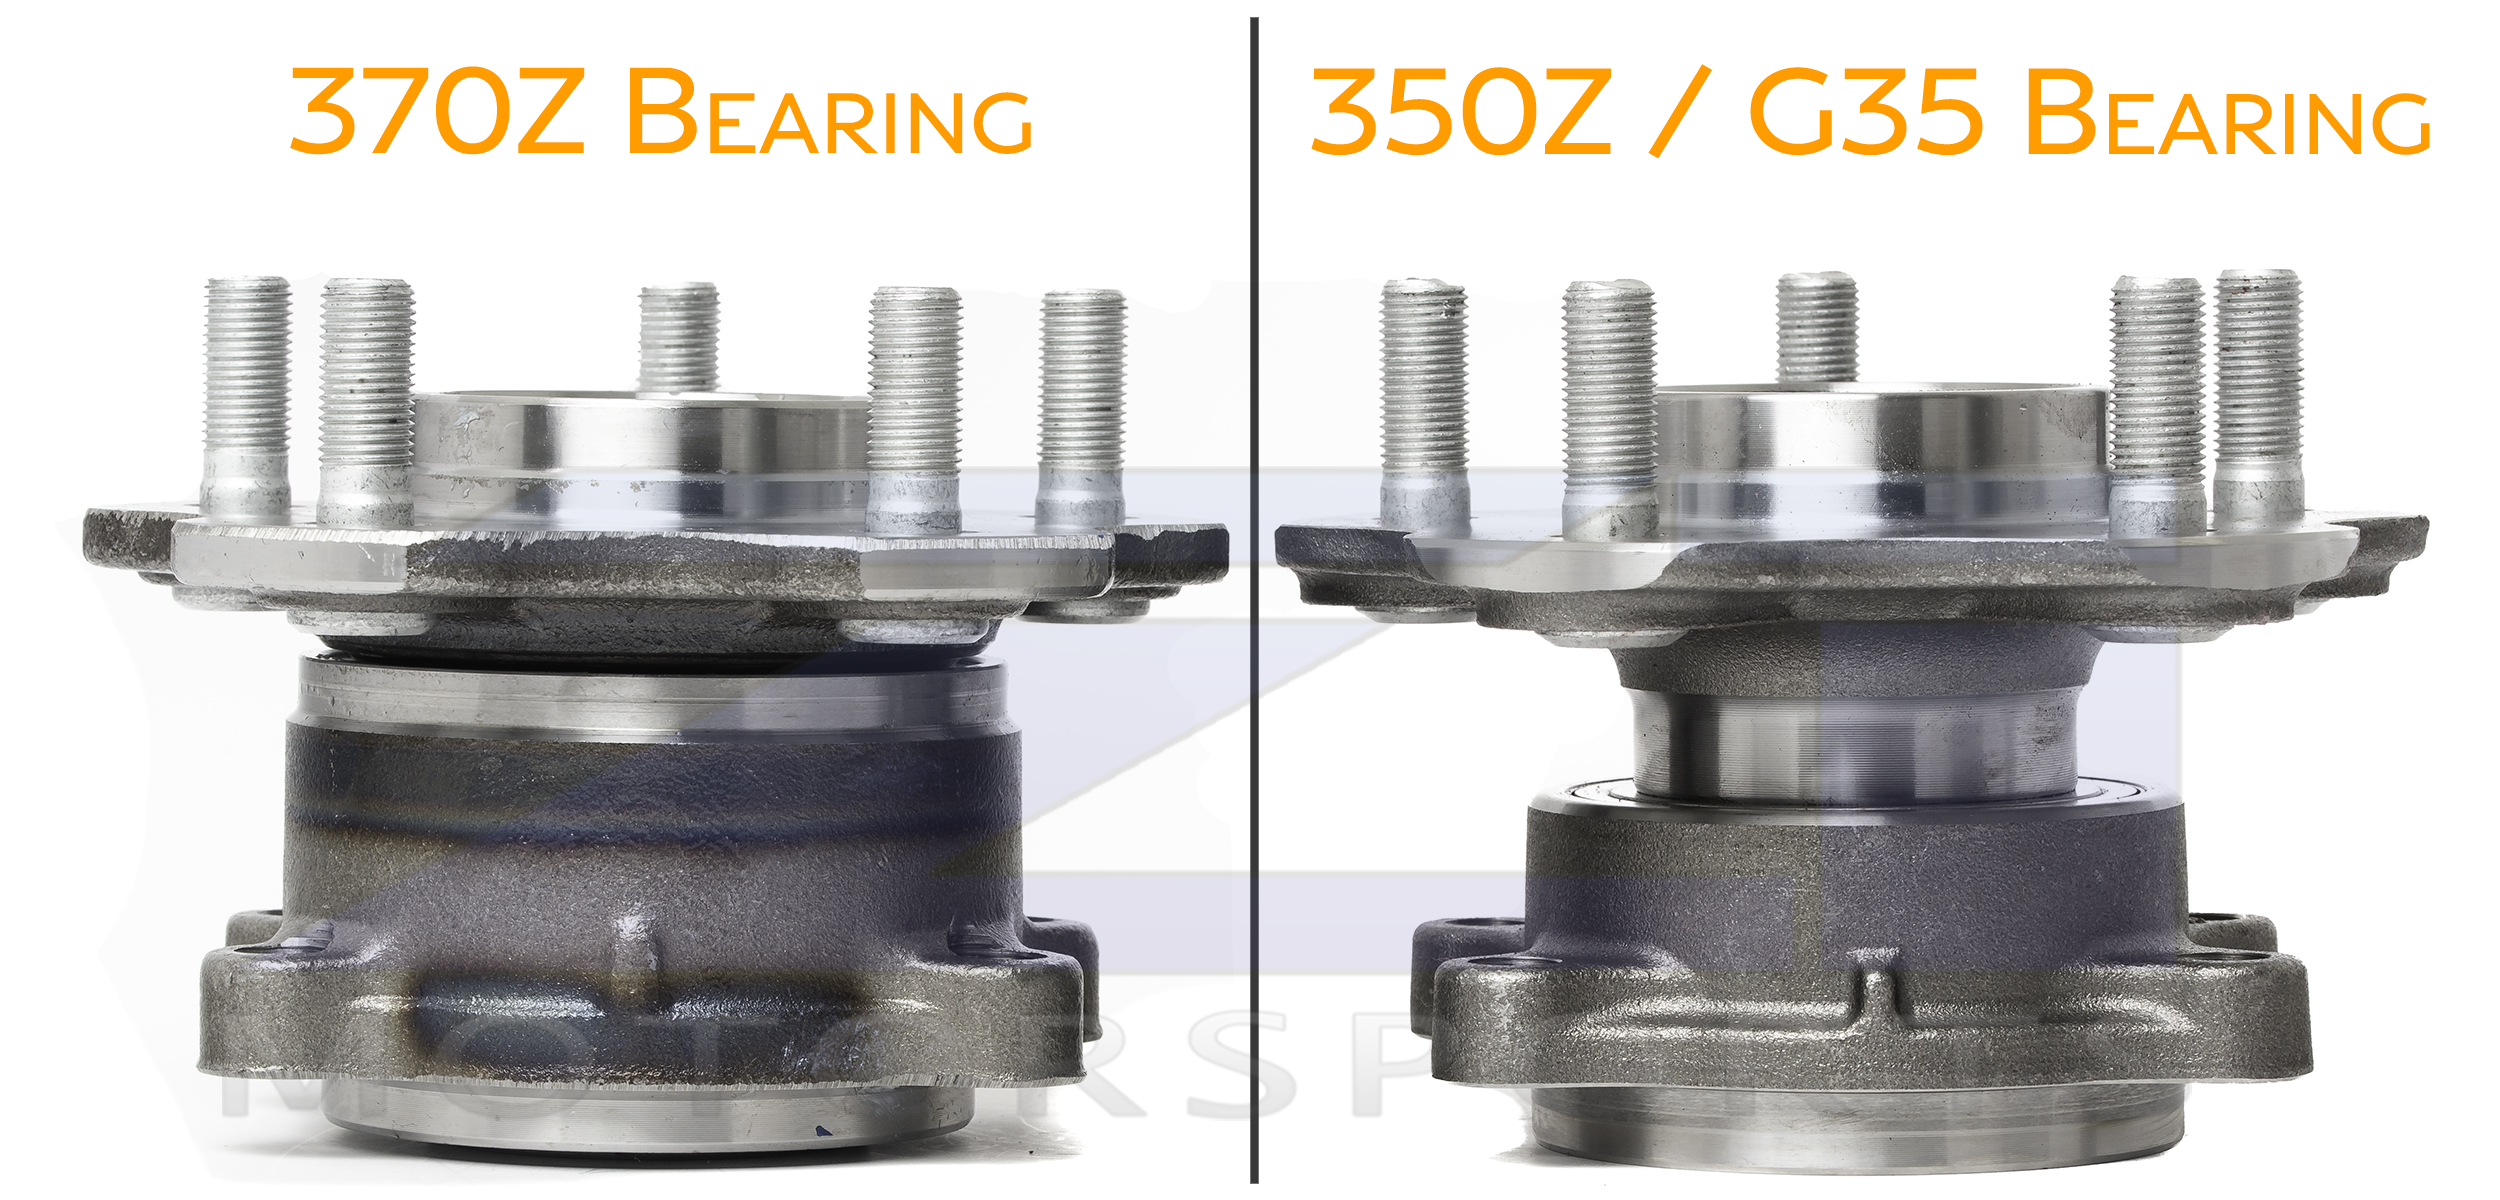 350Z 370Z G35 Rear Wheel Bearing Comparison